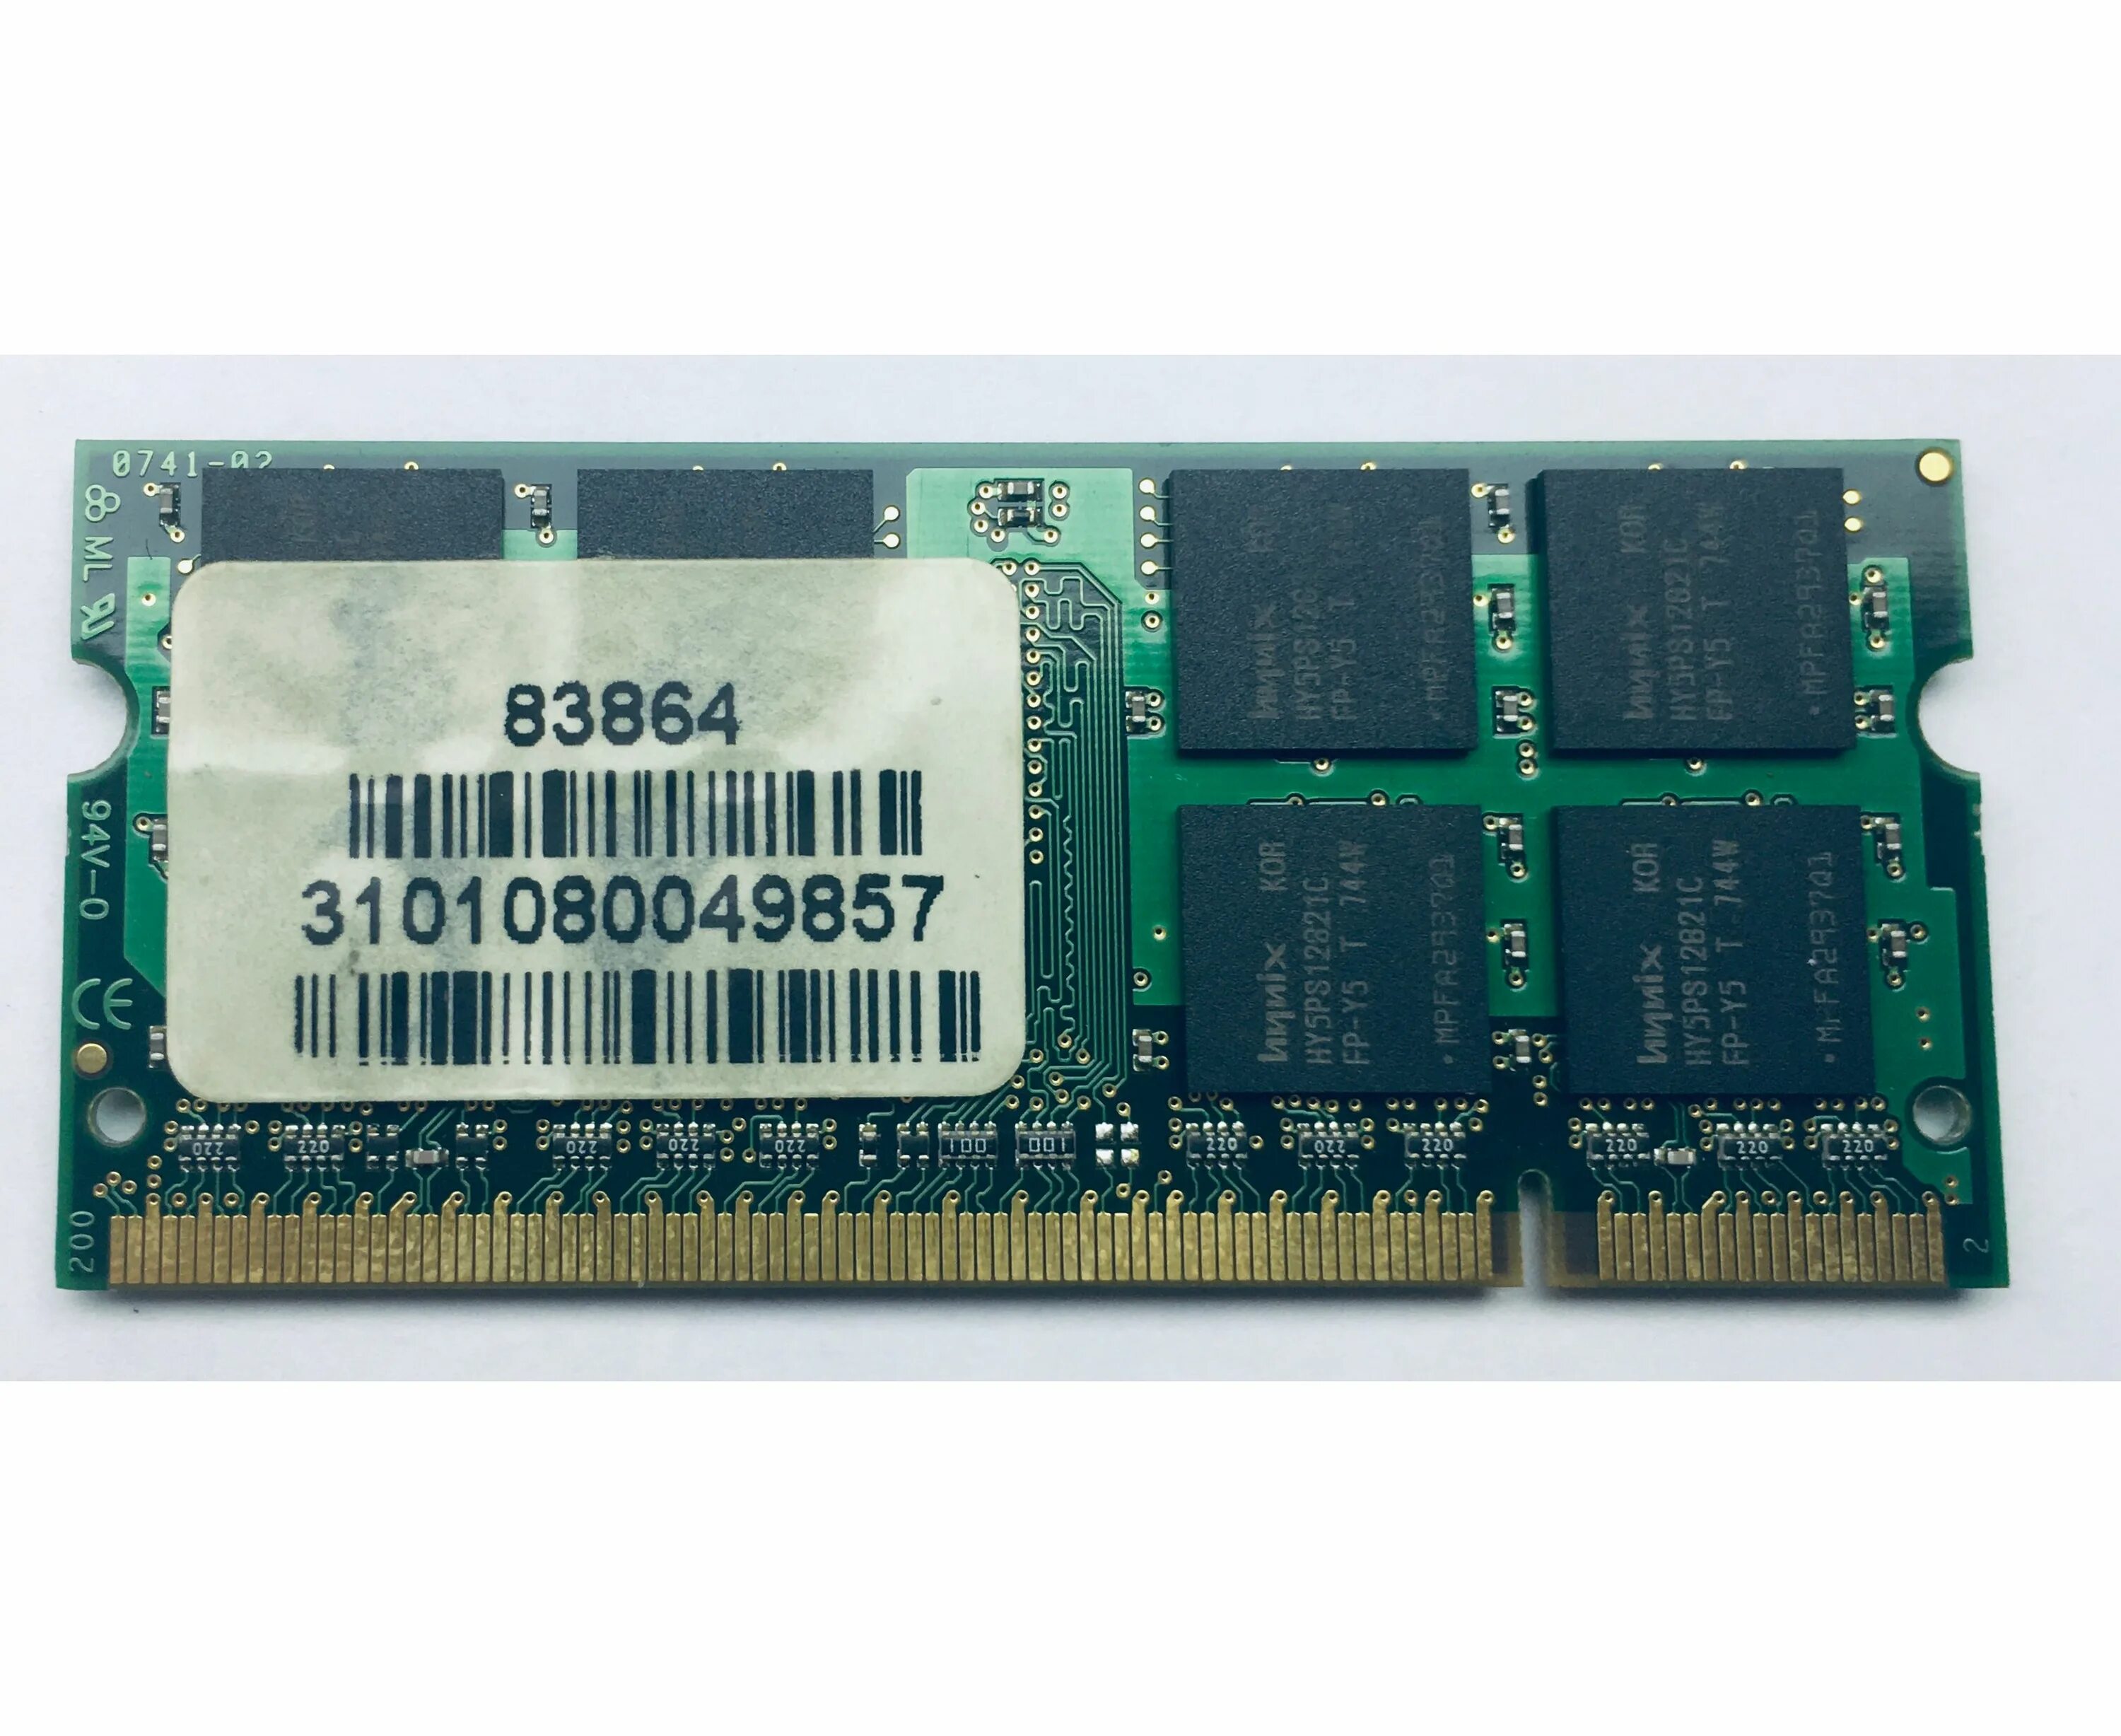 Дешевая память купить. Оперативная память 1 ГБ 1 шт. Hynix ddr2 800 so-DIMM 1gb. Оперативная память 4 ГБ 1 шт. Hynix ddr2 800 so-DIMM 4gb. Память Kingmax ddr2-667 8 ГБ. Оперативная память ддр2 2 ГБ.